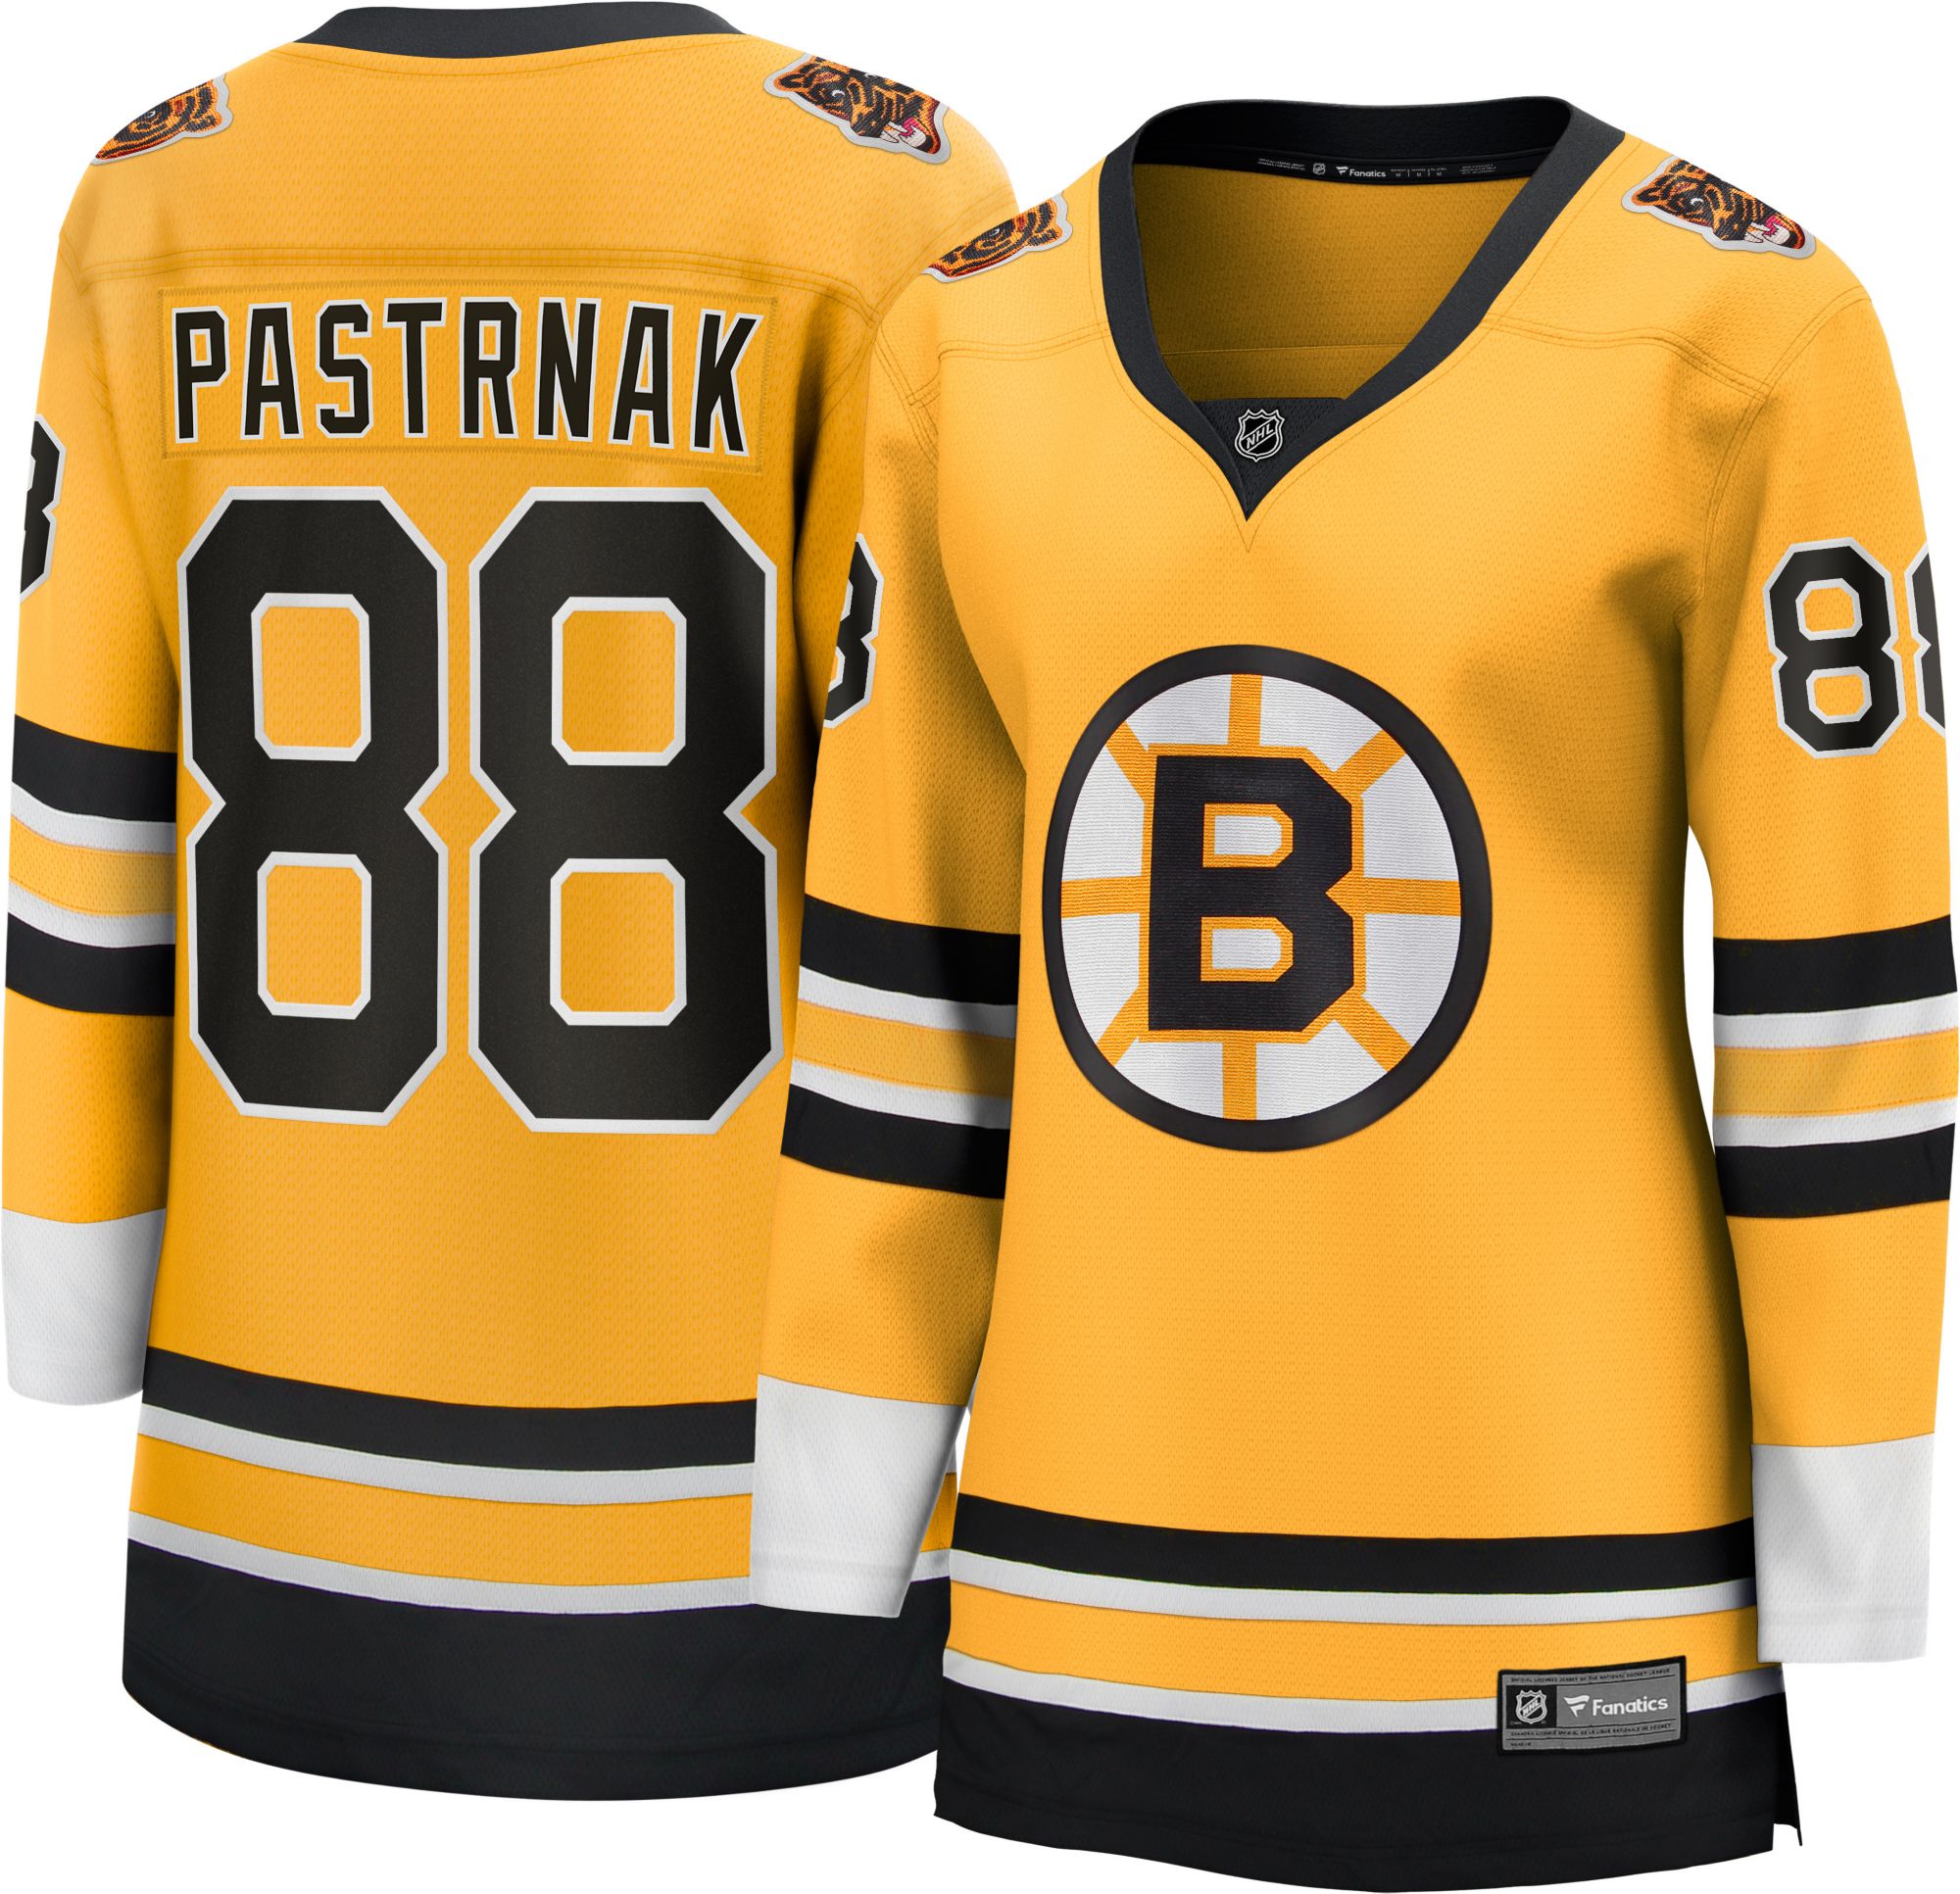 David Pastrnak NHL Jerseys, NHL Jersey, NHL Uniforms